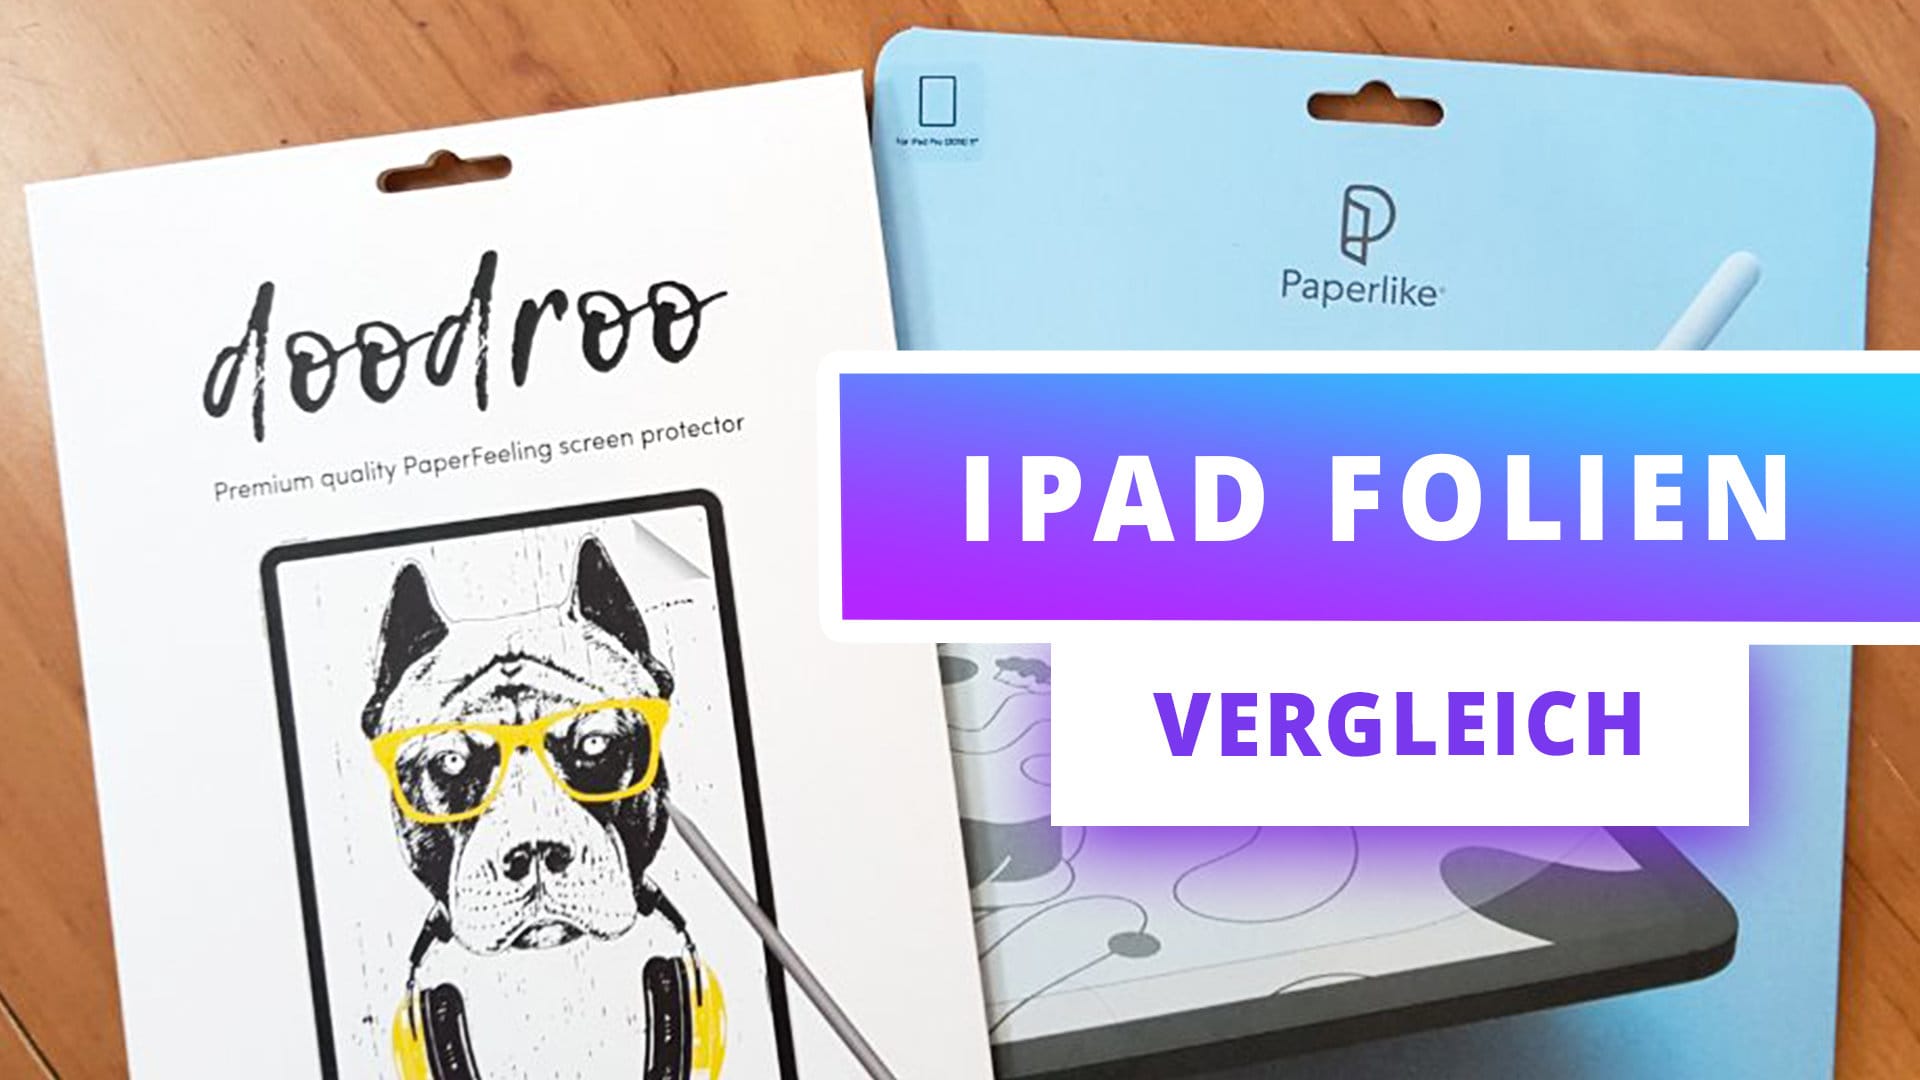 iPad Folien Test & Vergleich – Doodroo vs. Paperlike